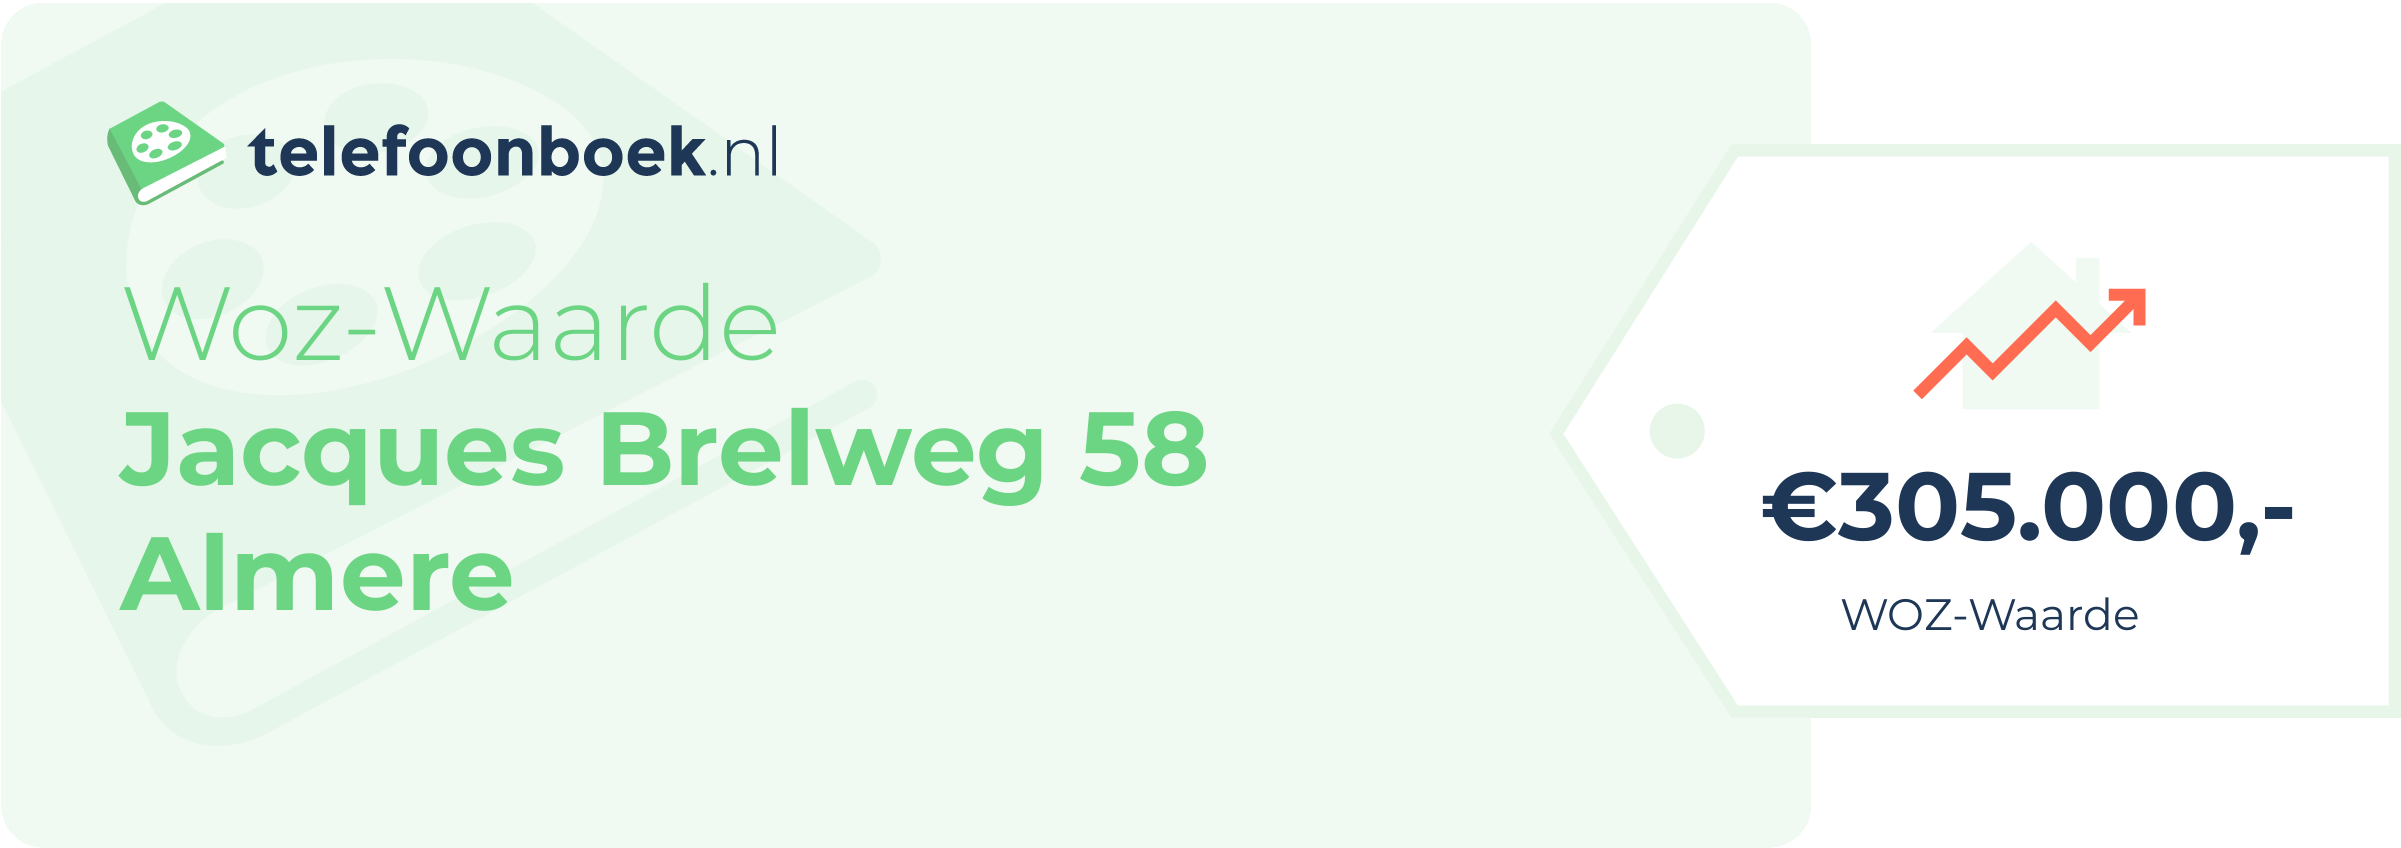 WOZ-waarde Jacques Brelweg 58 Almere